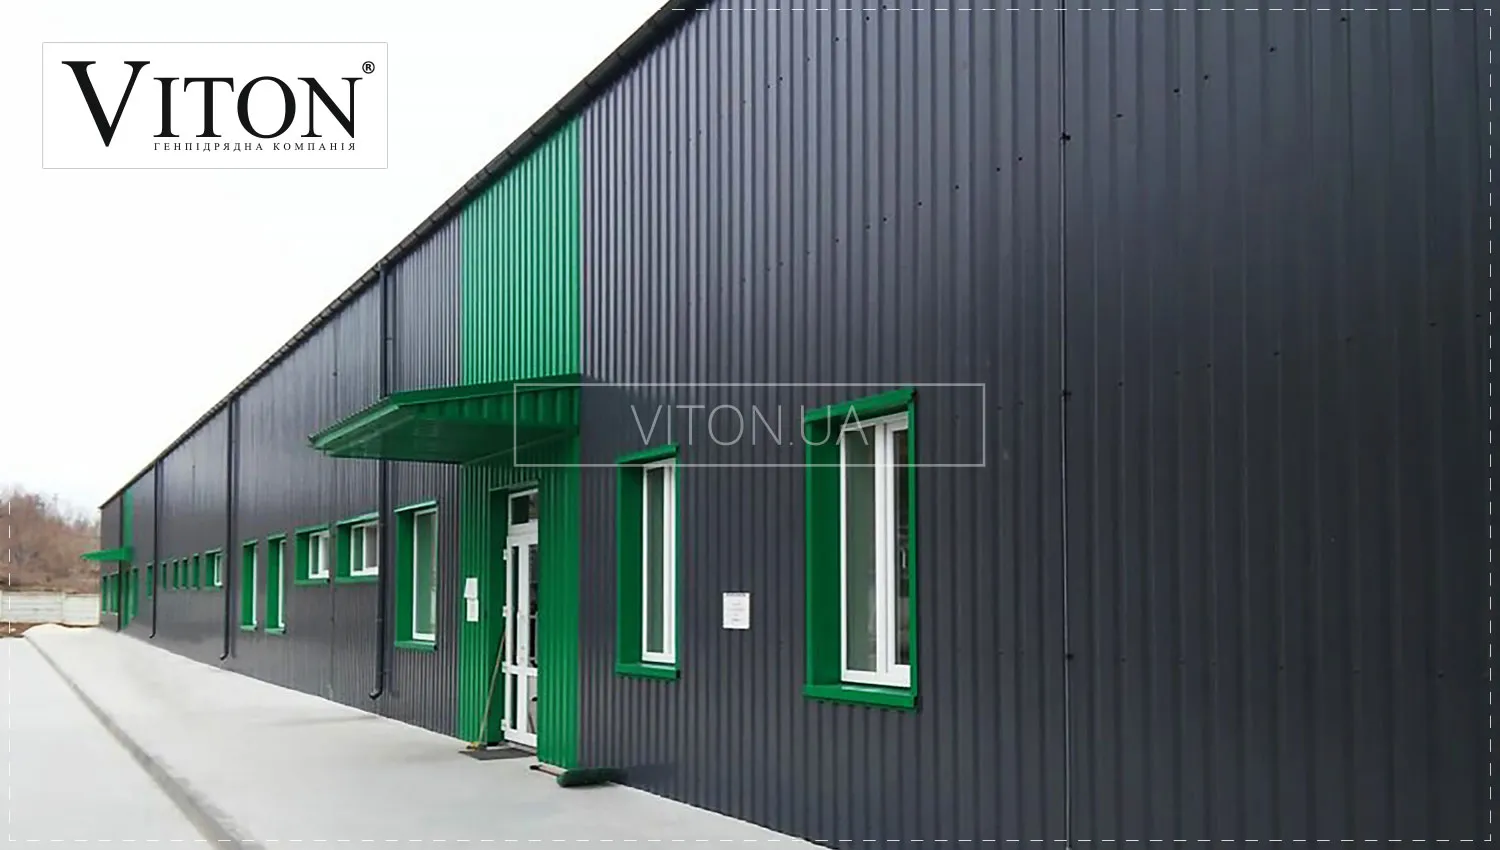 Звукоизоляция и теплоизоляция для зданий из металлопроката — ООО «Витон».